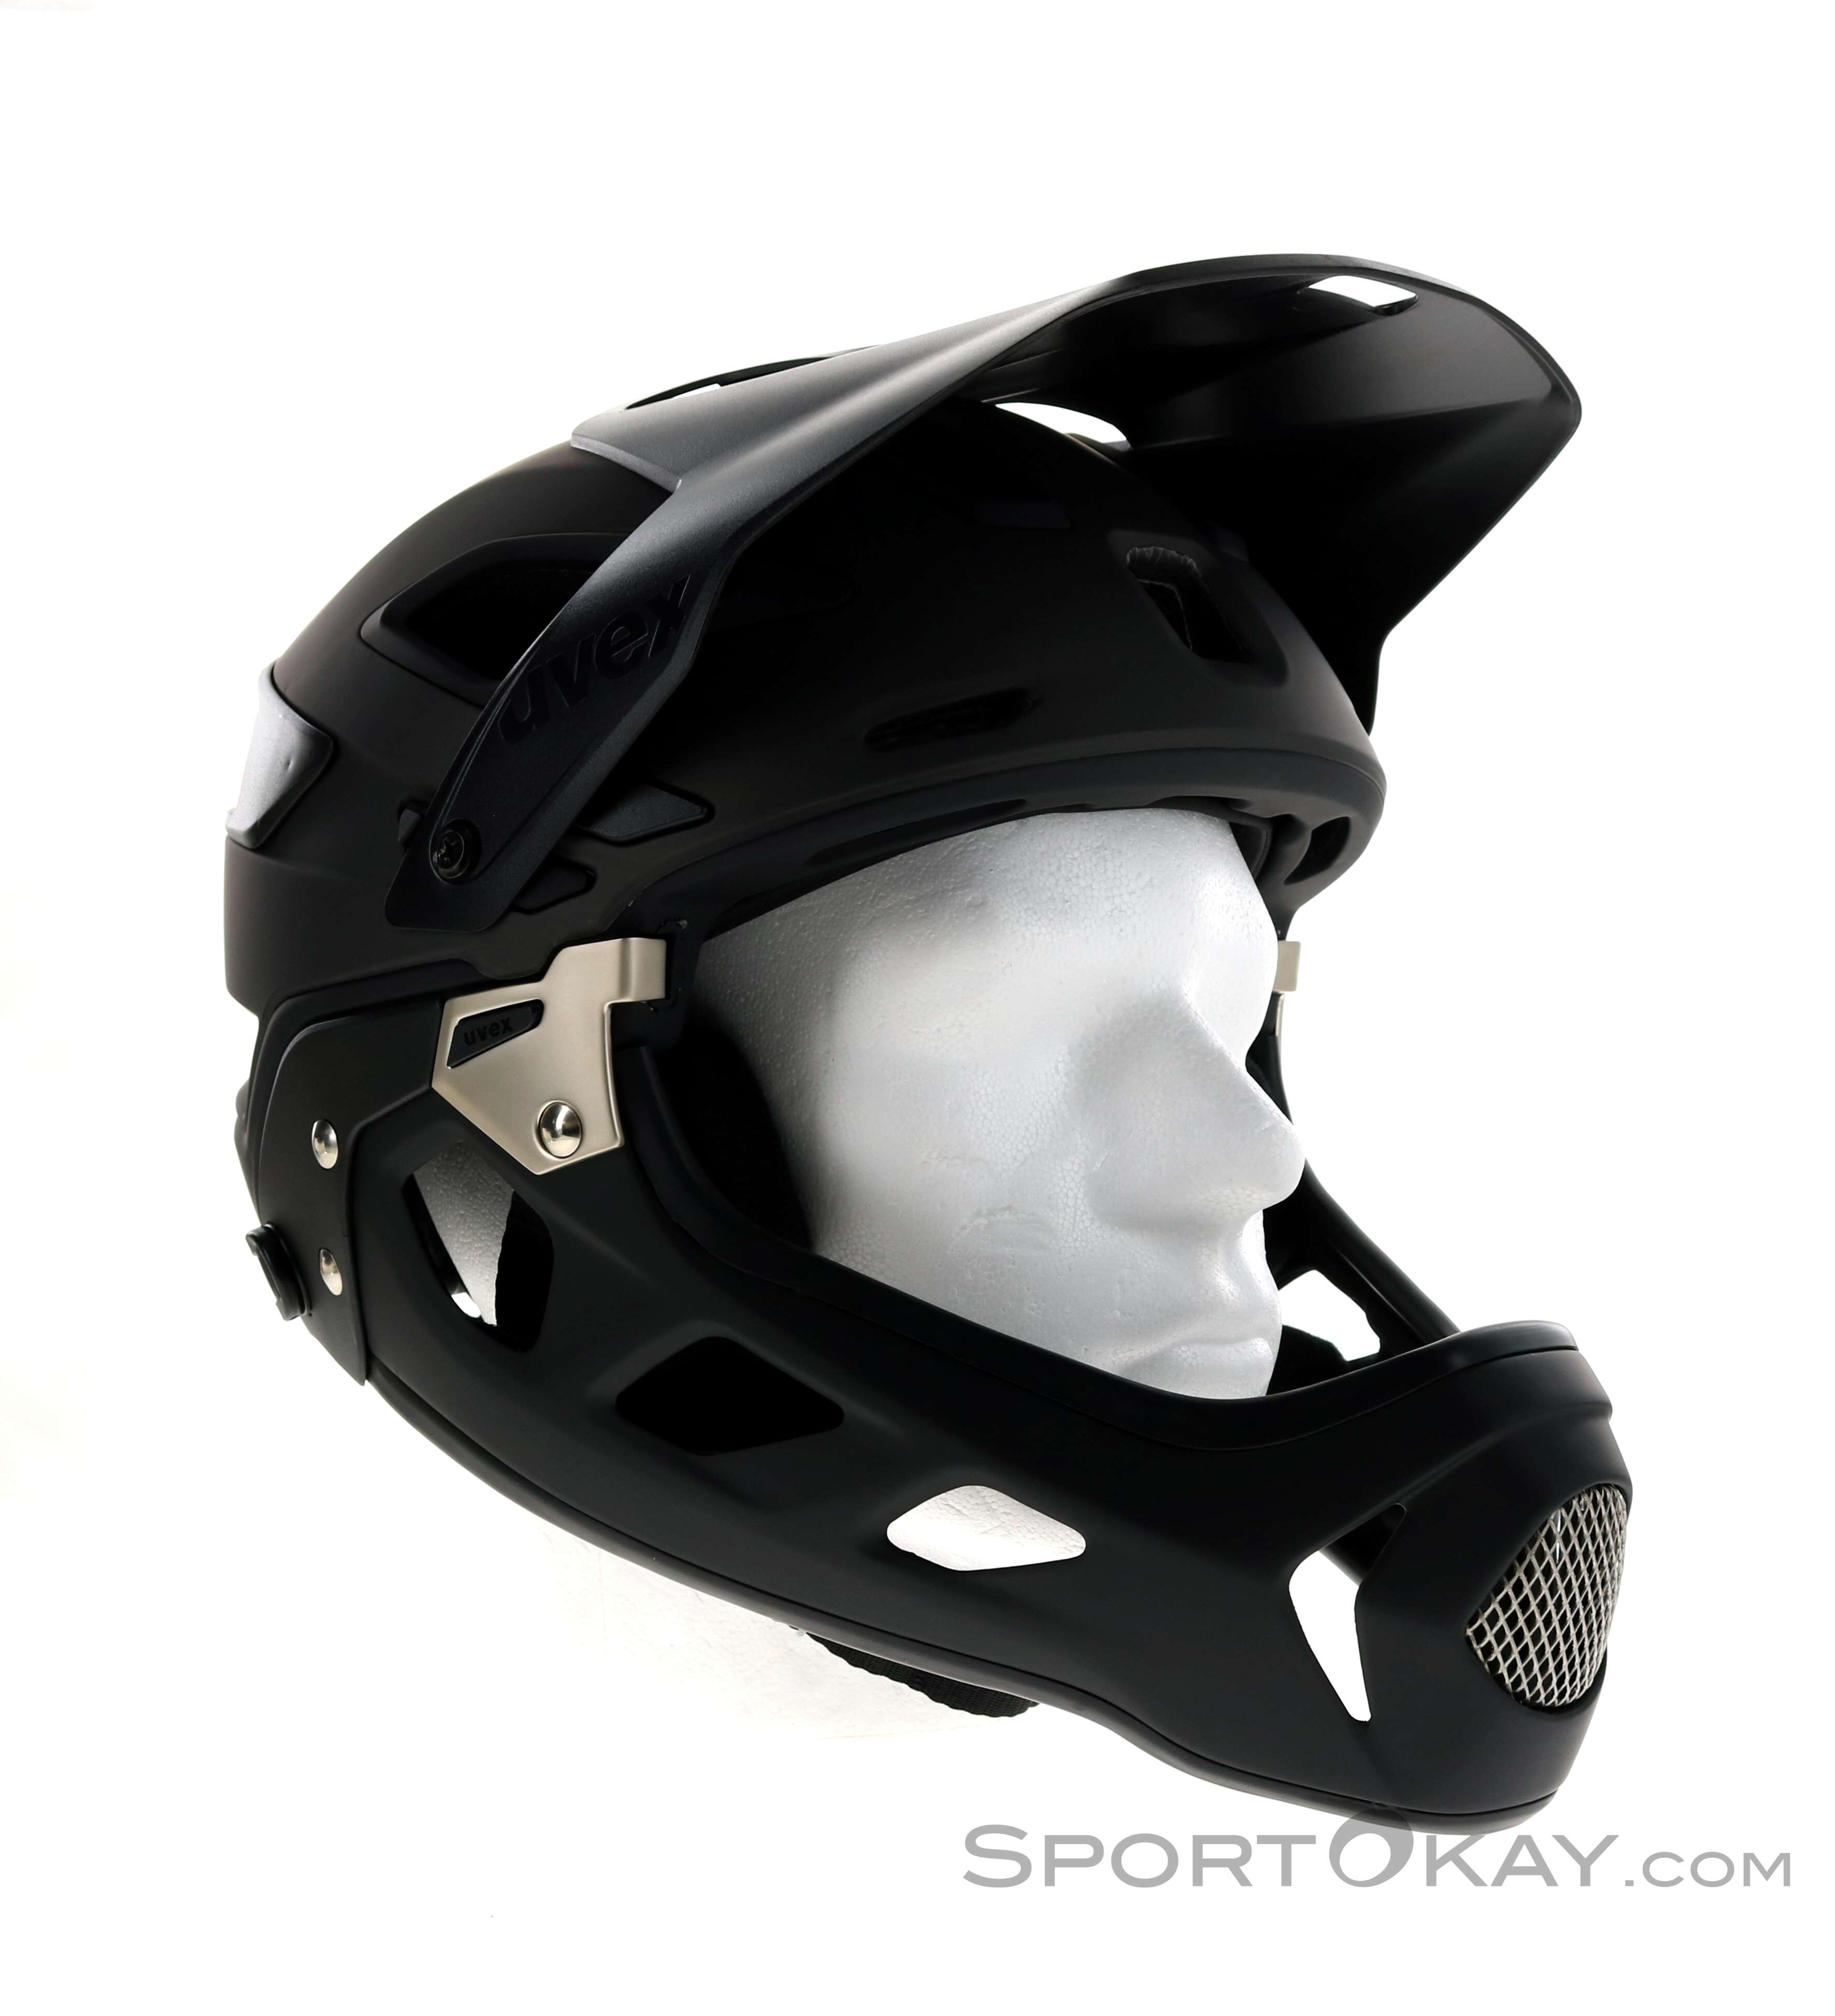 Sluier Bloeden presentatie Uvex Jakkyl Hde 2.0 Full Face Helmet detachable - Mountain Bike - Helmets -  Bike - All